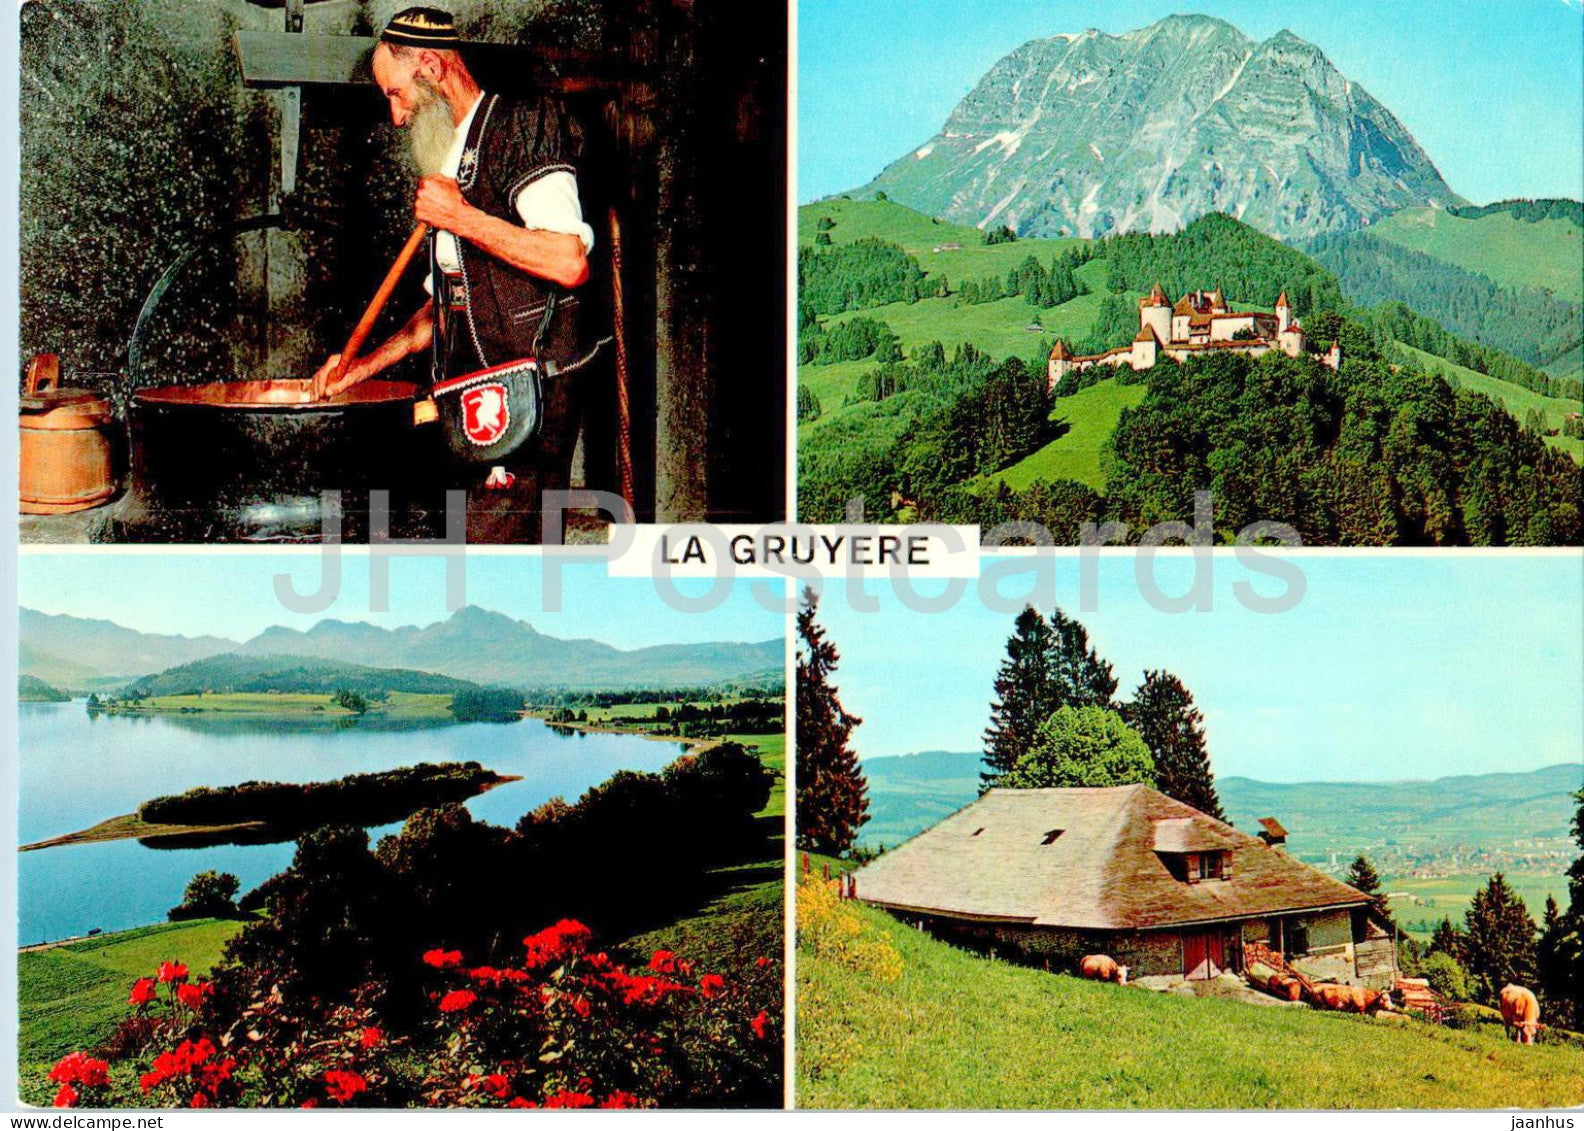 La Gruyere - dans le canton de Fribourg - multiview - 1122 - Switzerland - unused - JH Postcards